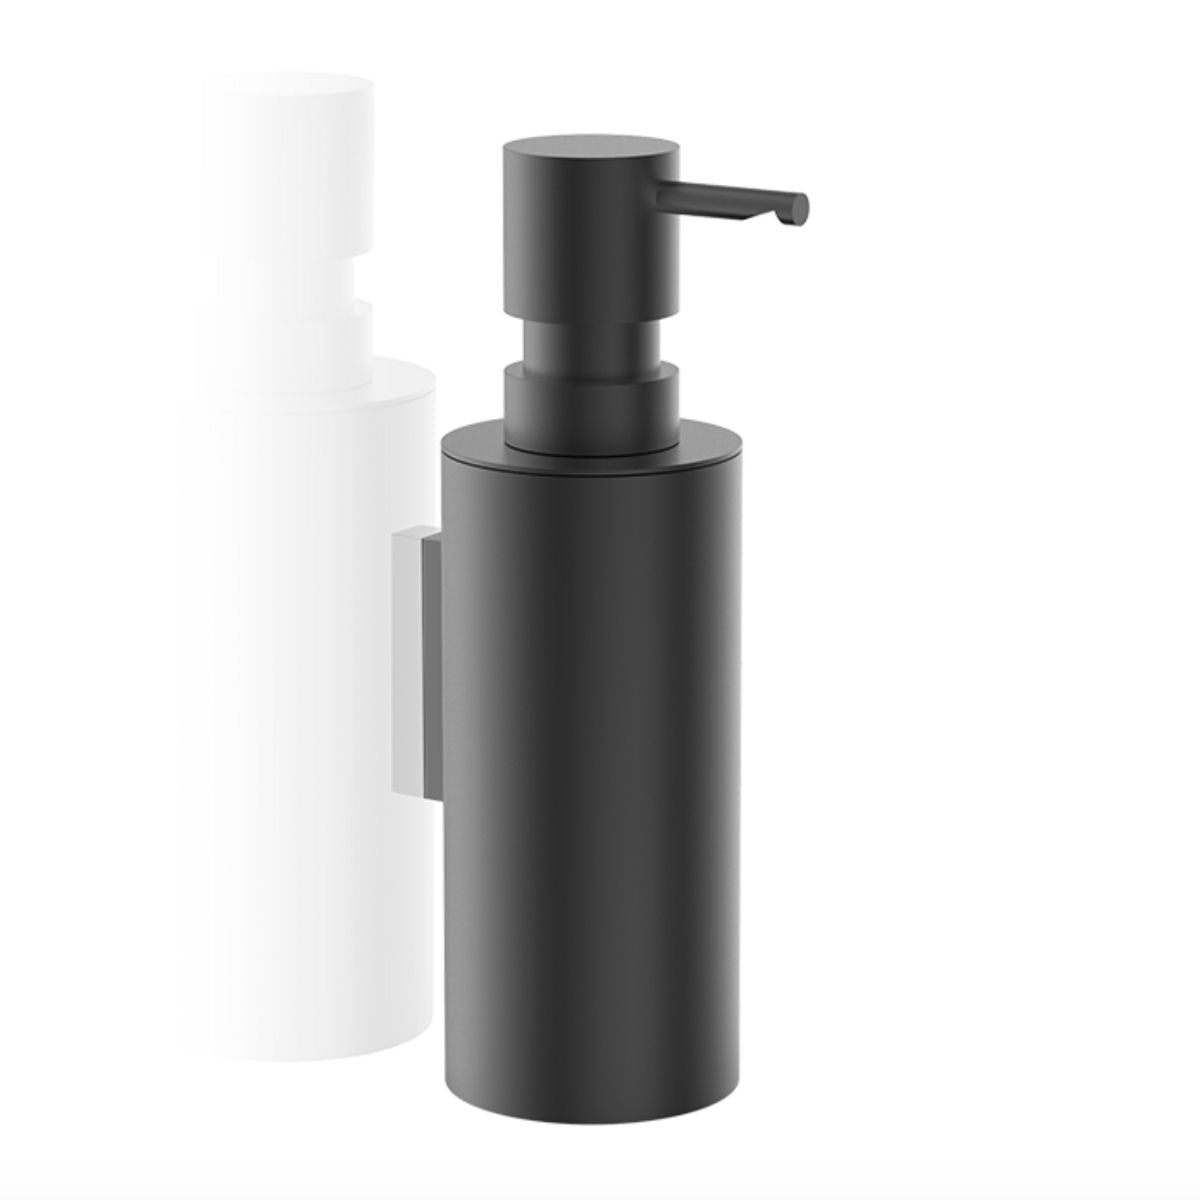 Wall Mounted Soap Dispenser Black Matt by Decor Walther - |VESIMI Design|